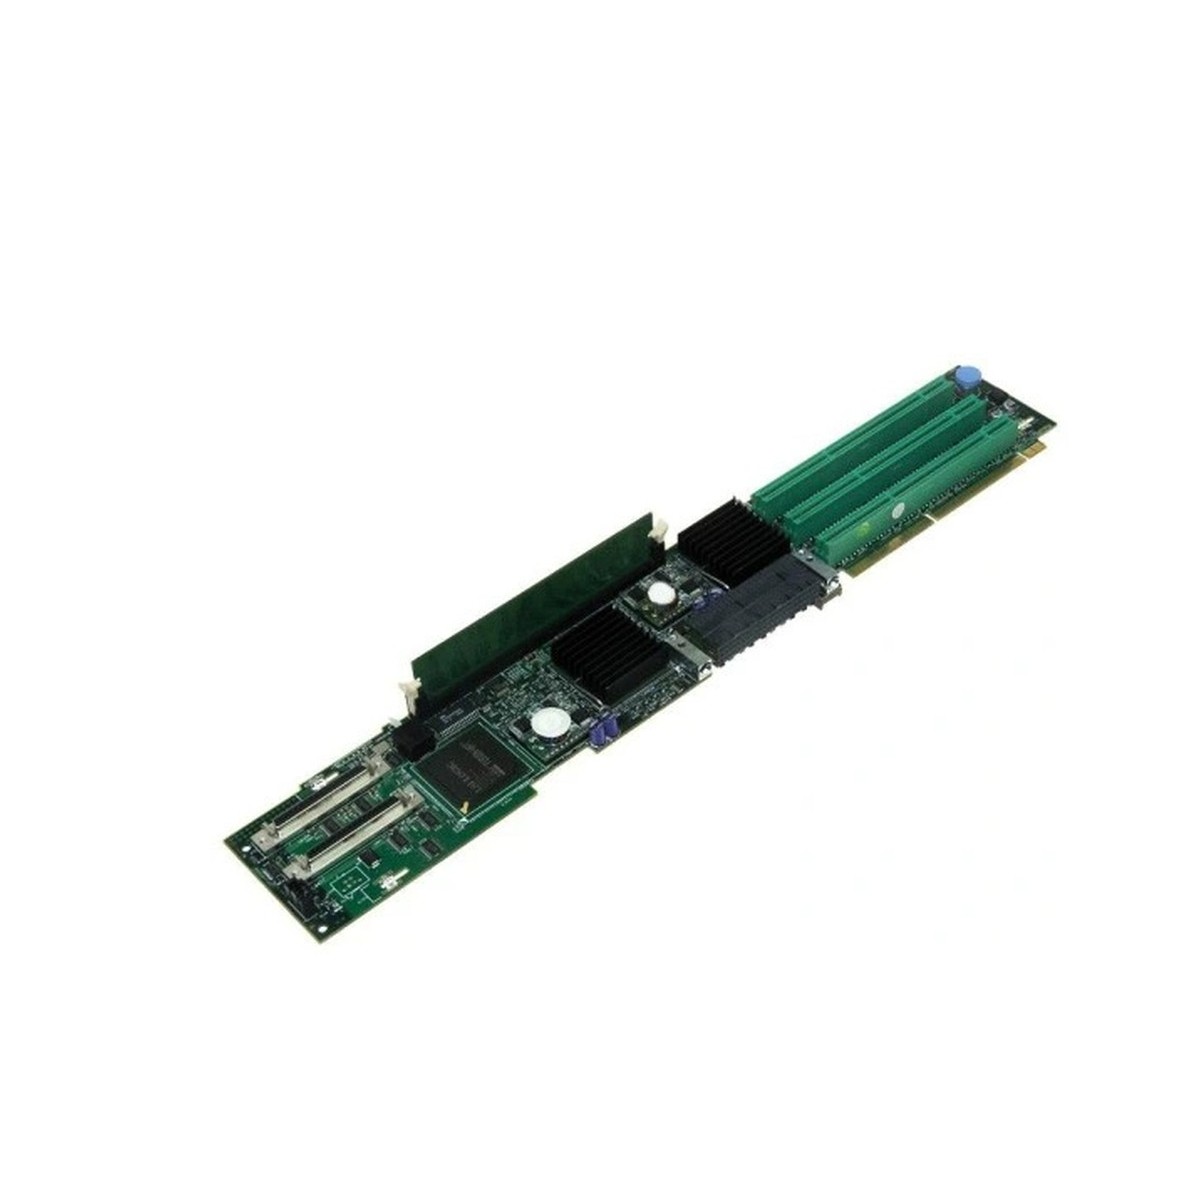 RISER BOARD DELL POWEREDGE 2850 0U8373 PCI-X